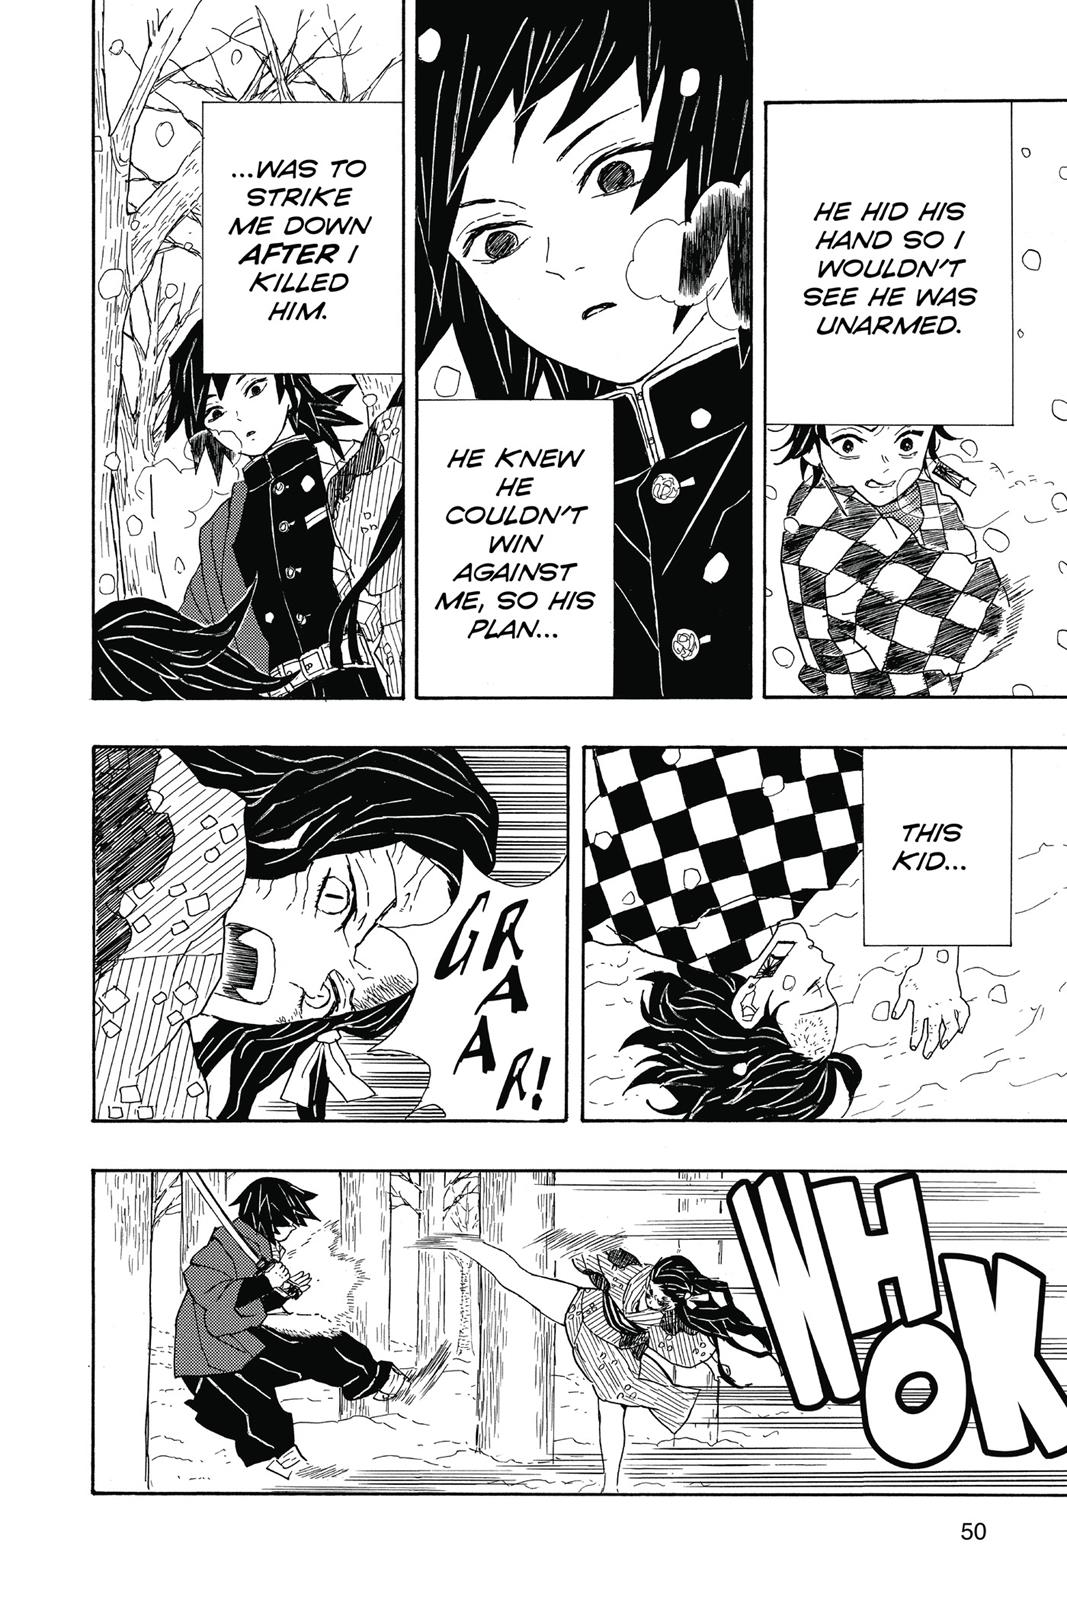 Demon Slayer Manga Manga Chapter - 1 - image 30